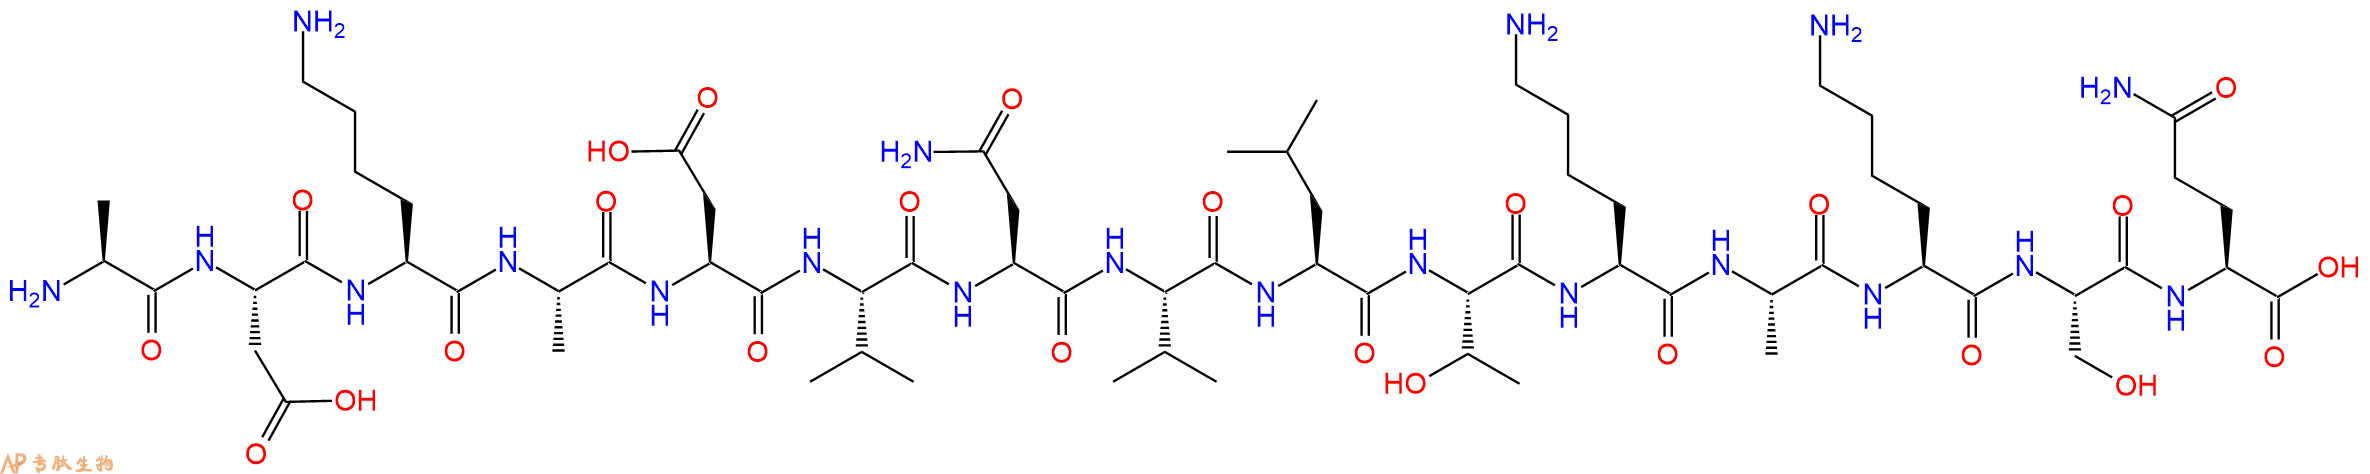 专肽生物产品甲状旁腺激素 pTH (70-84) (human)213533-86-9